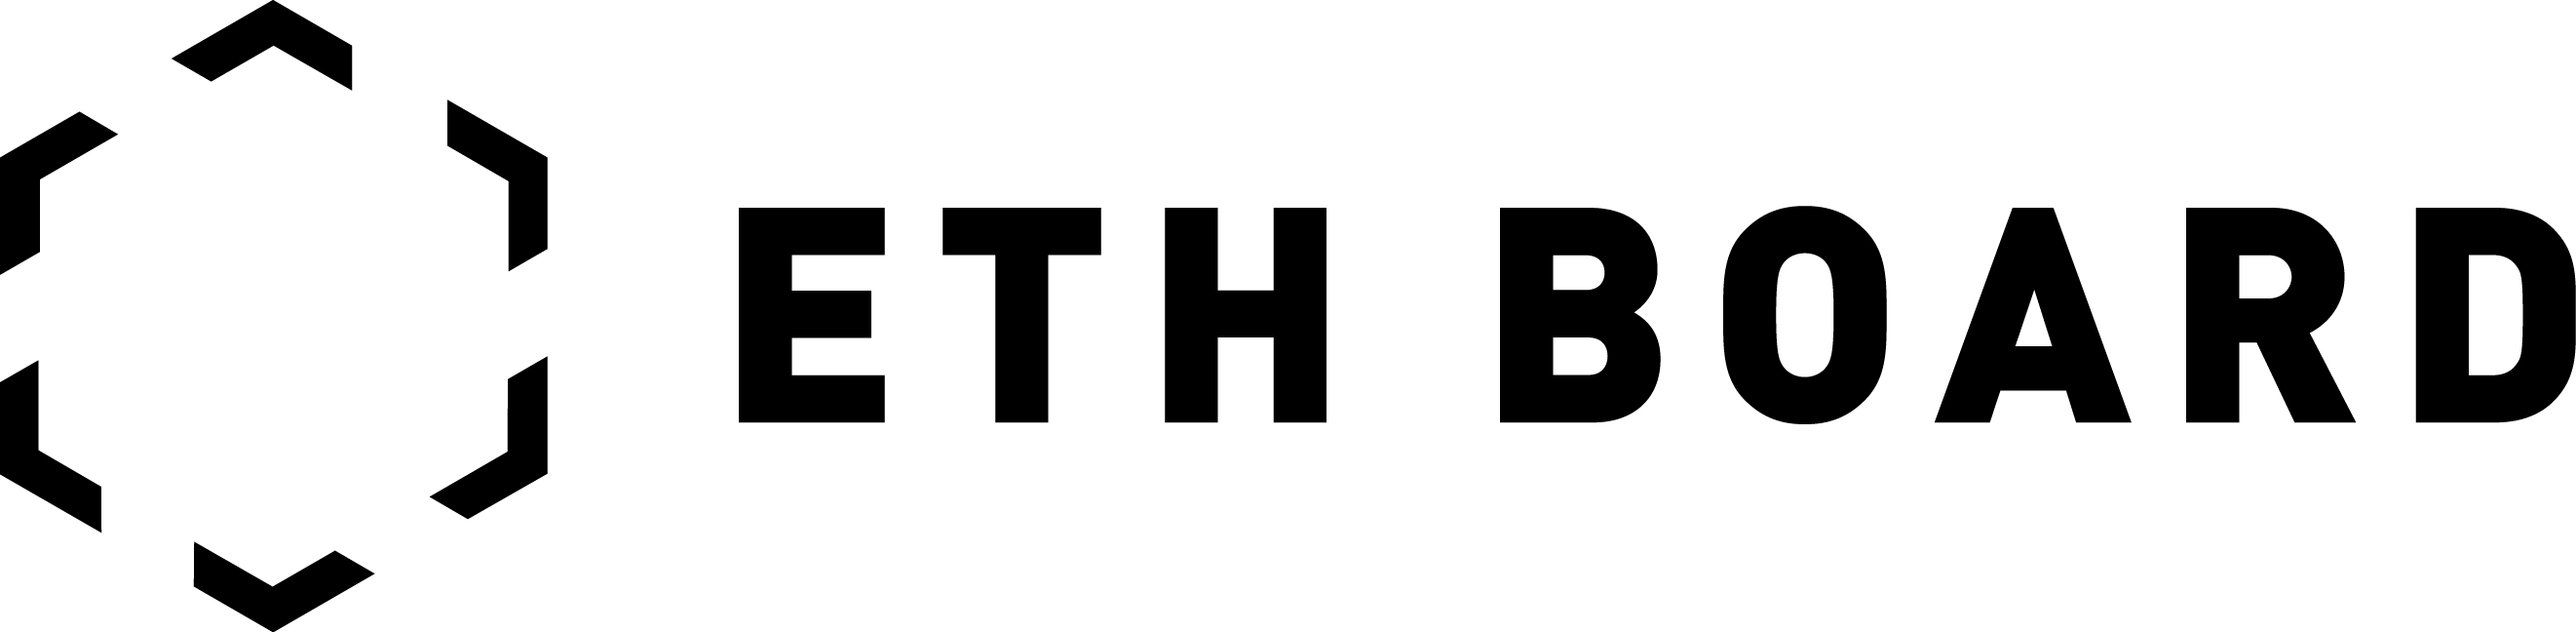 Bildergebnis für logo eth board